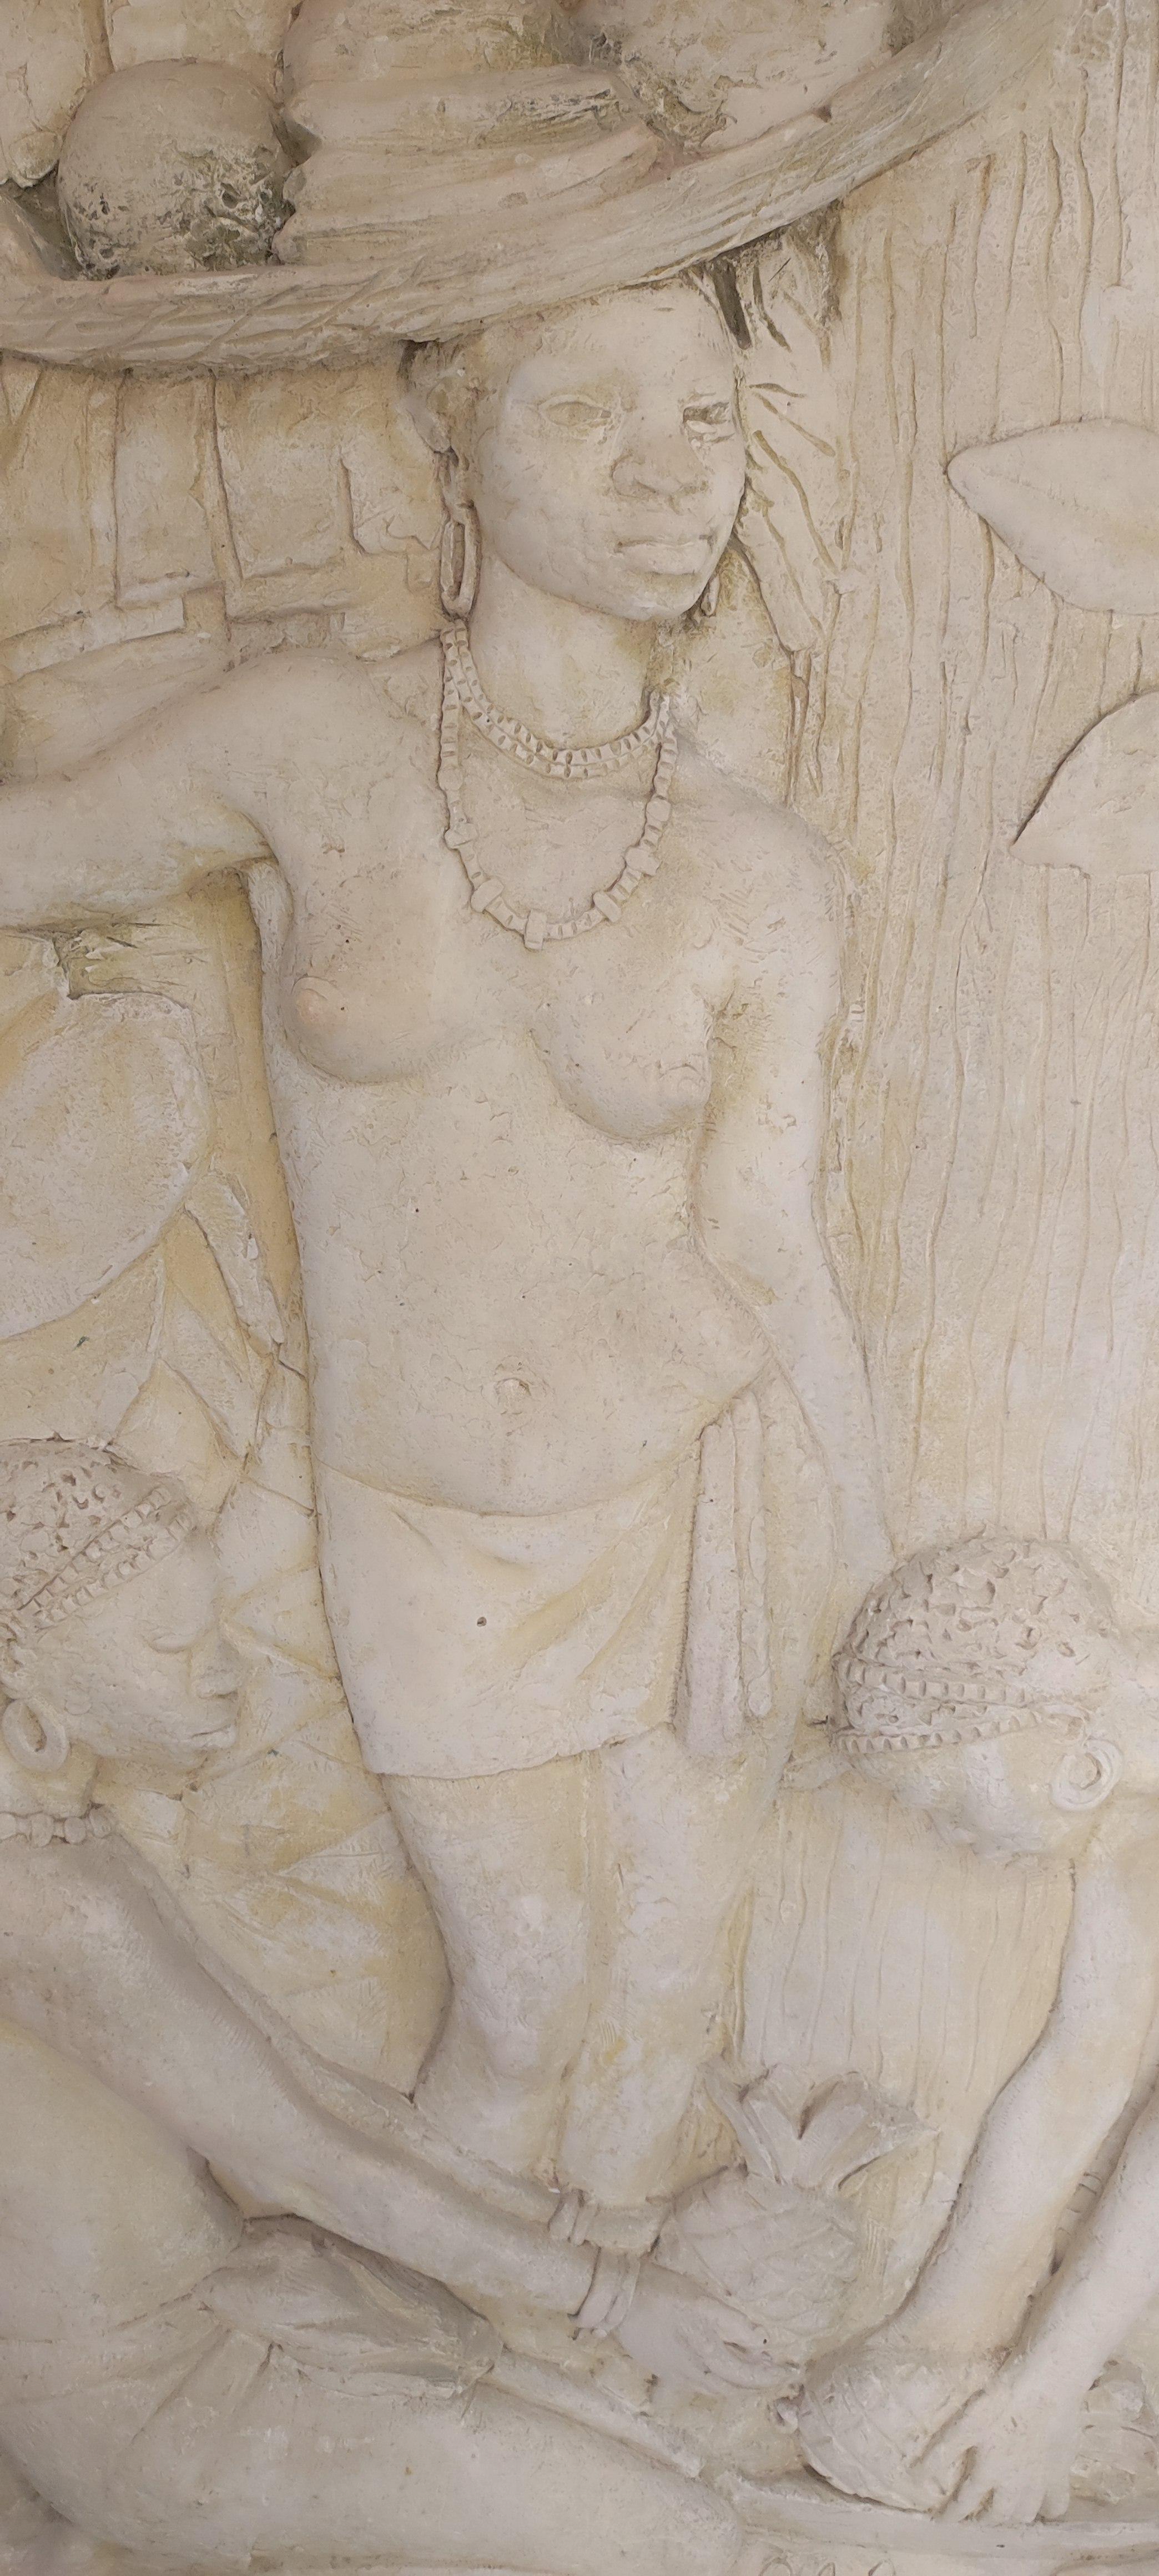 Francisco Xavier de Viveiros Costa (1914 / 1997)
Bas-relief en plâtre représentant une scène africaine, dans un cadre en bois
Signé et daté 1941
161,5x215,5 cm
fourni avec des supports de suspension murale
,
Originaire de São Miguel (île des